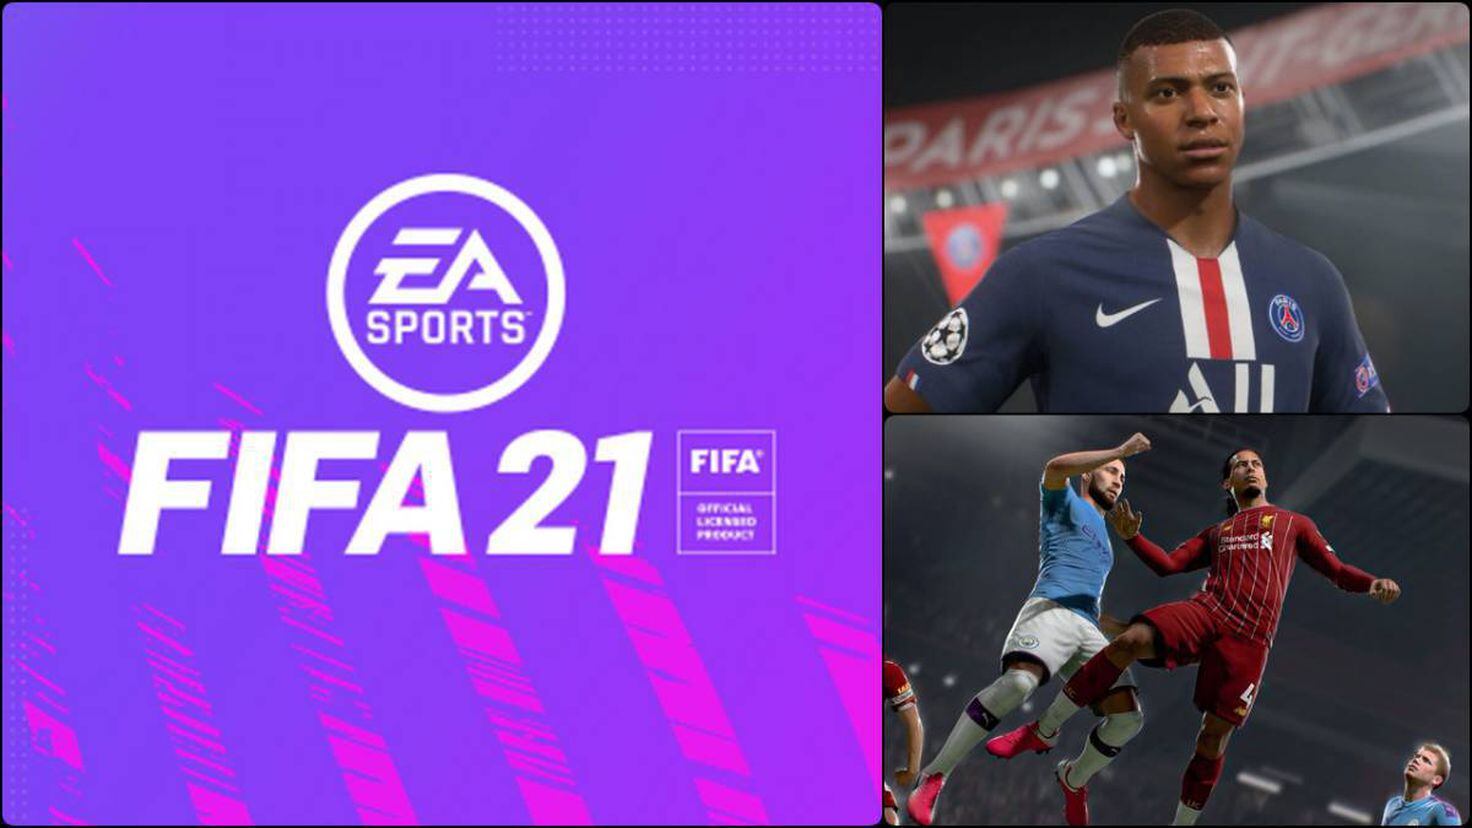 Análisis FIFA 21 para PS5 y Xbox Series X, S